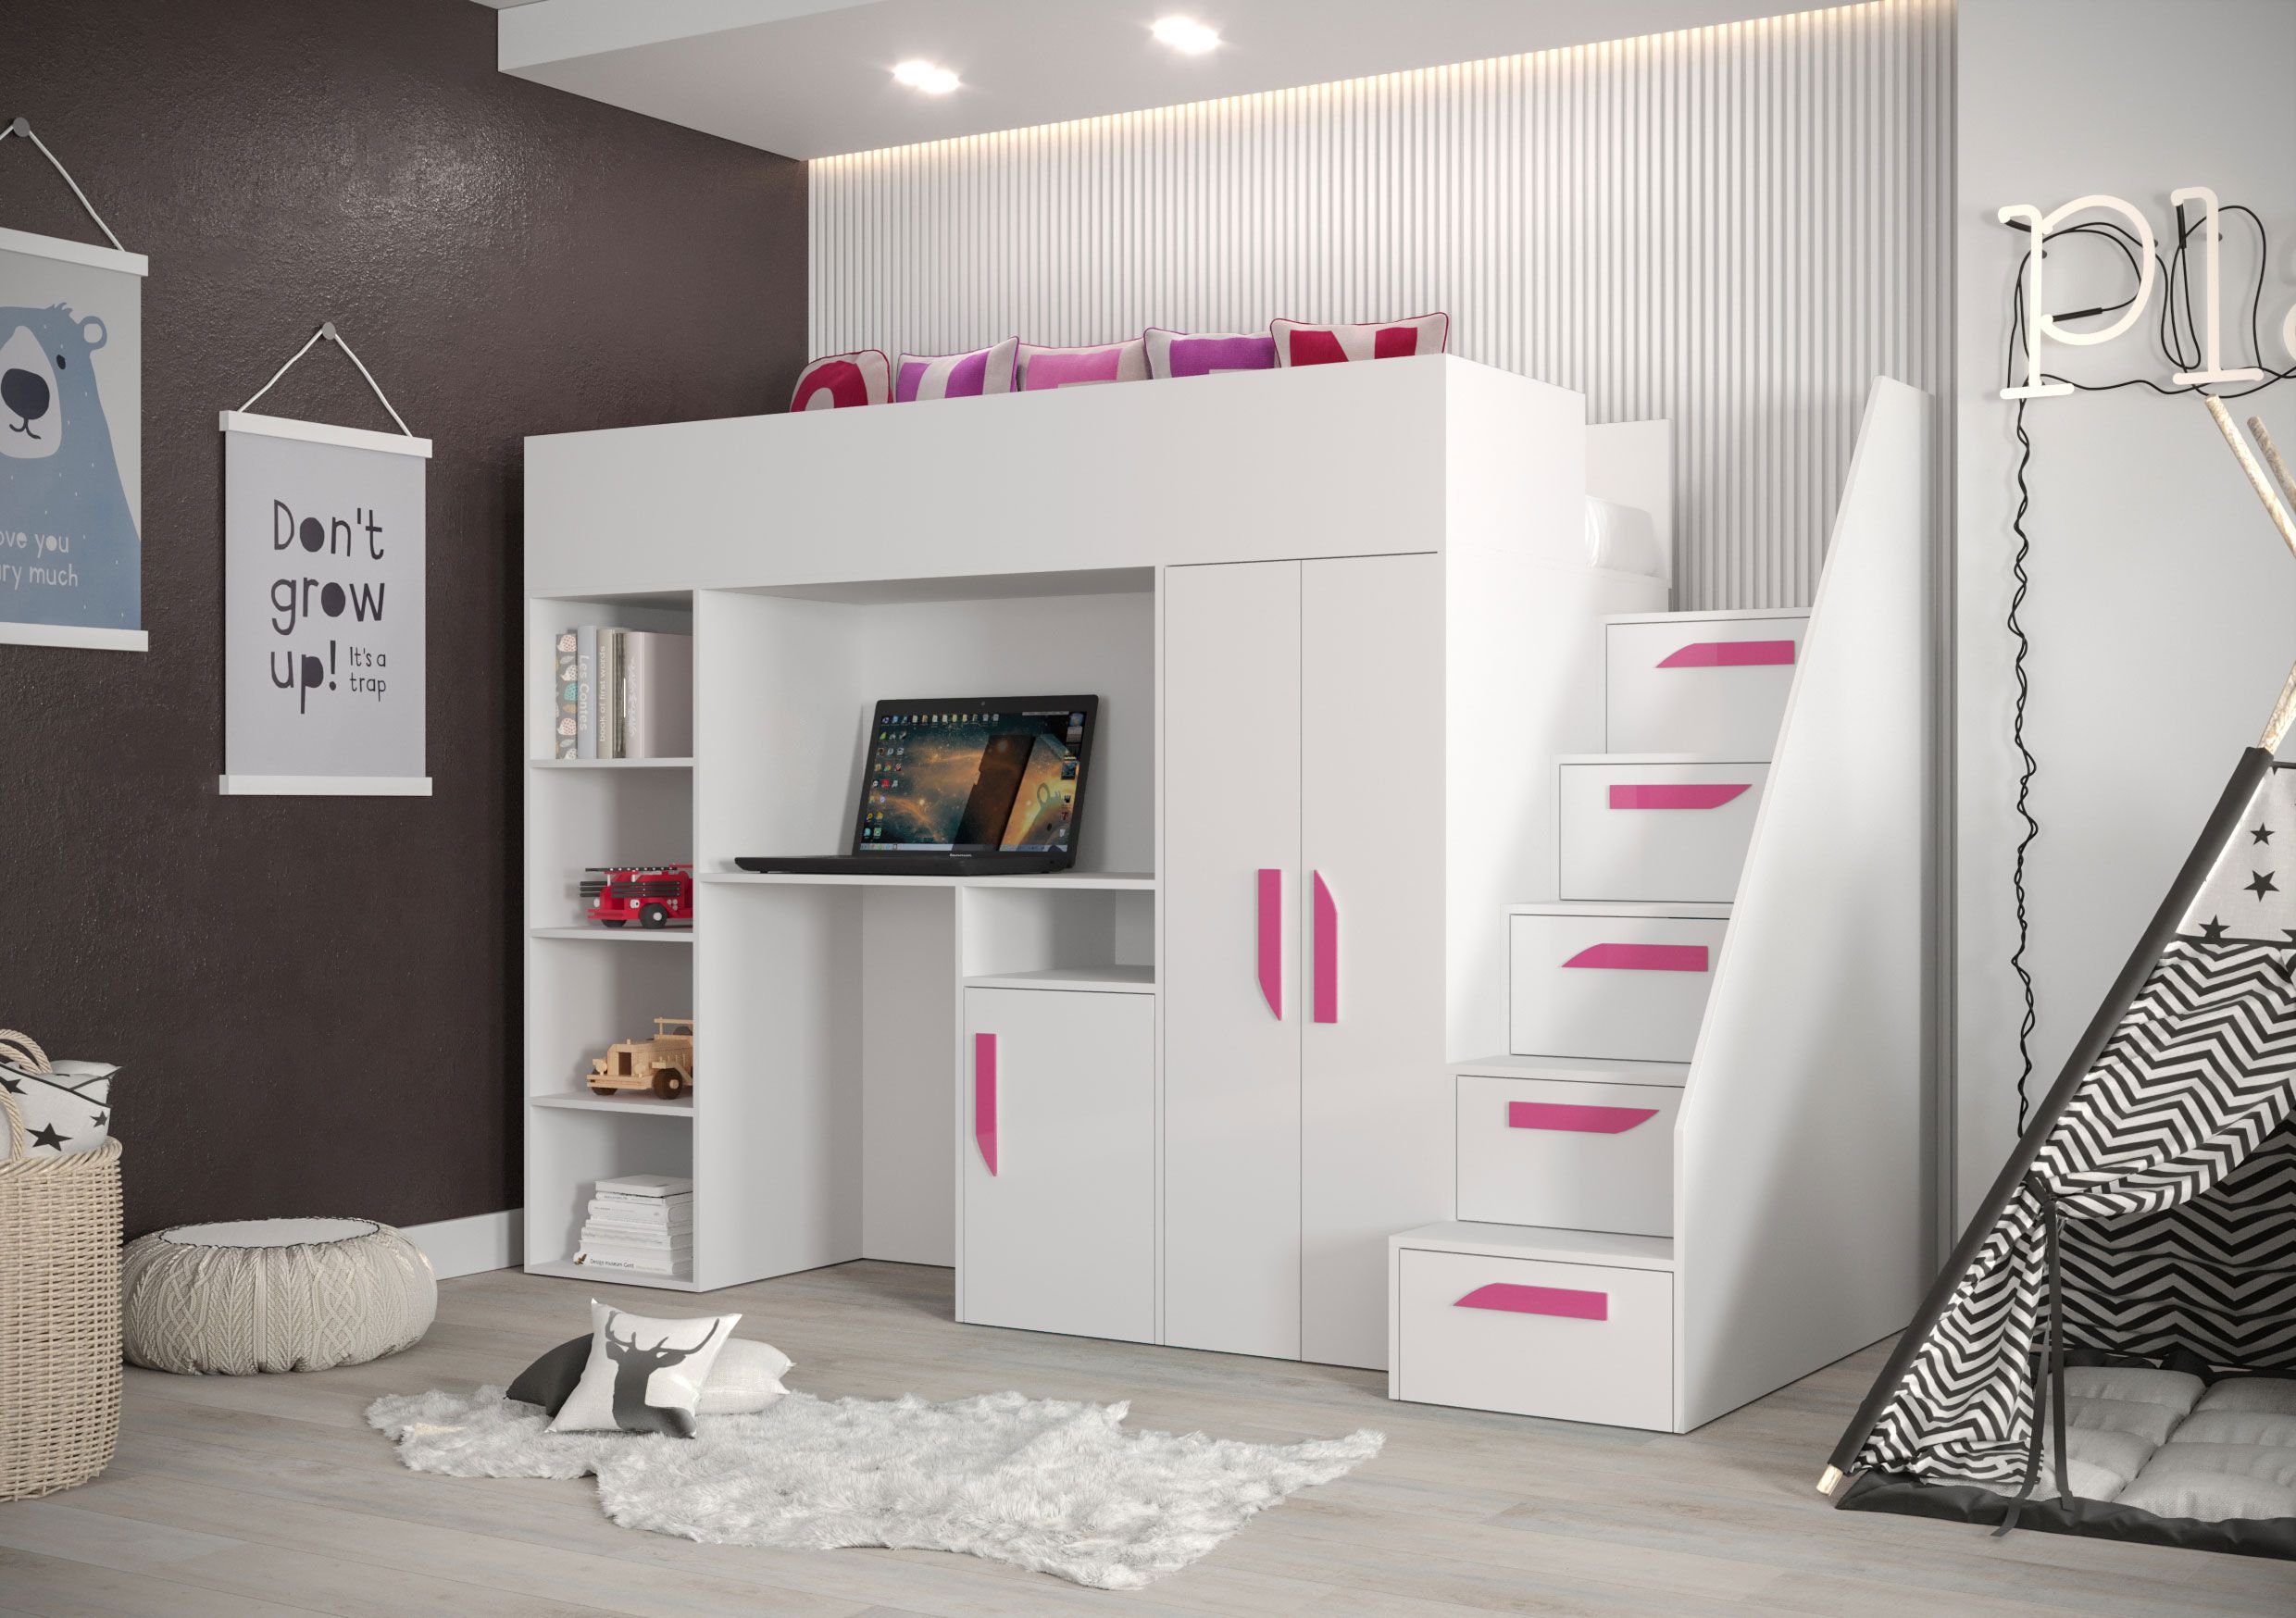 Lit fonctionnel / lit d'enfant / lit surélevé avec espace de rangement et bureau Jura 22, couleur : blanc / rose - dimensions : 165 x 247 x 120 cm (h x l x p)